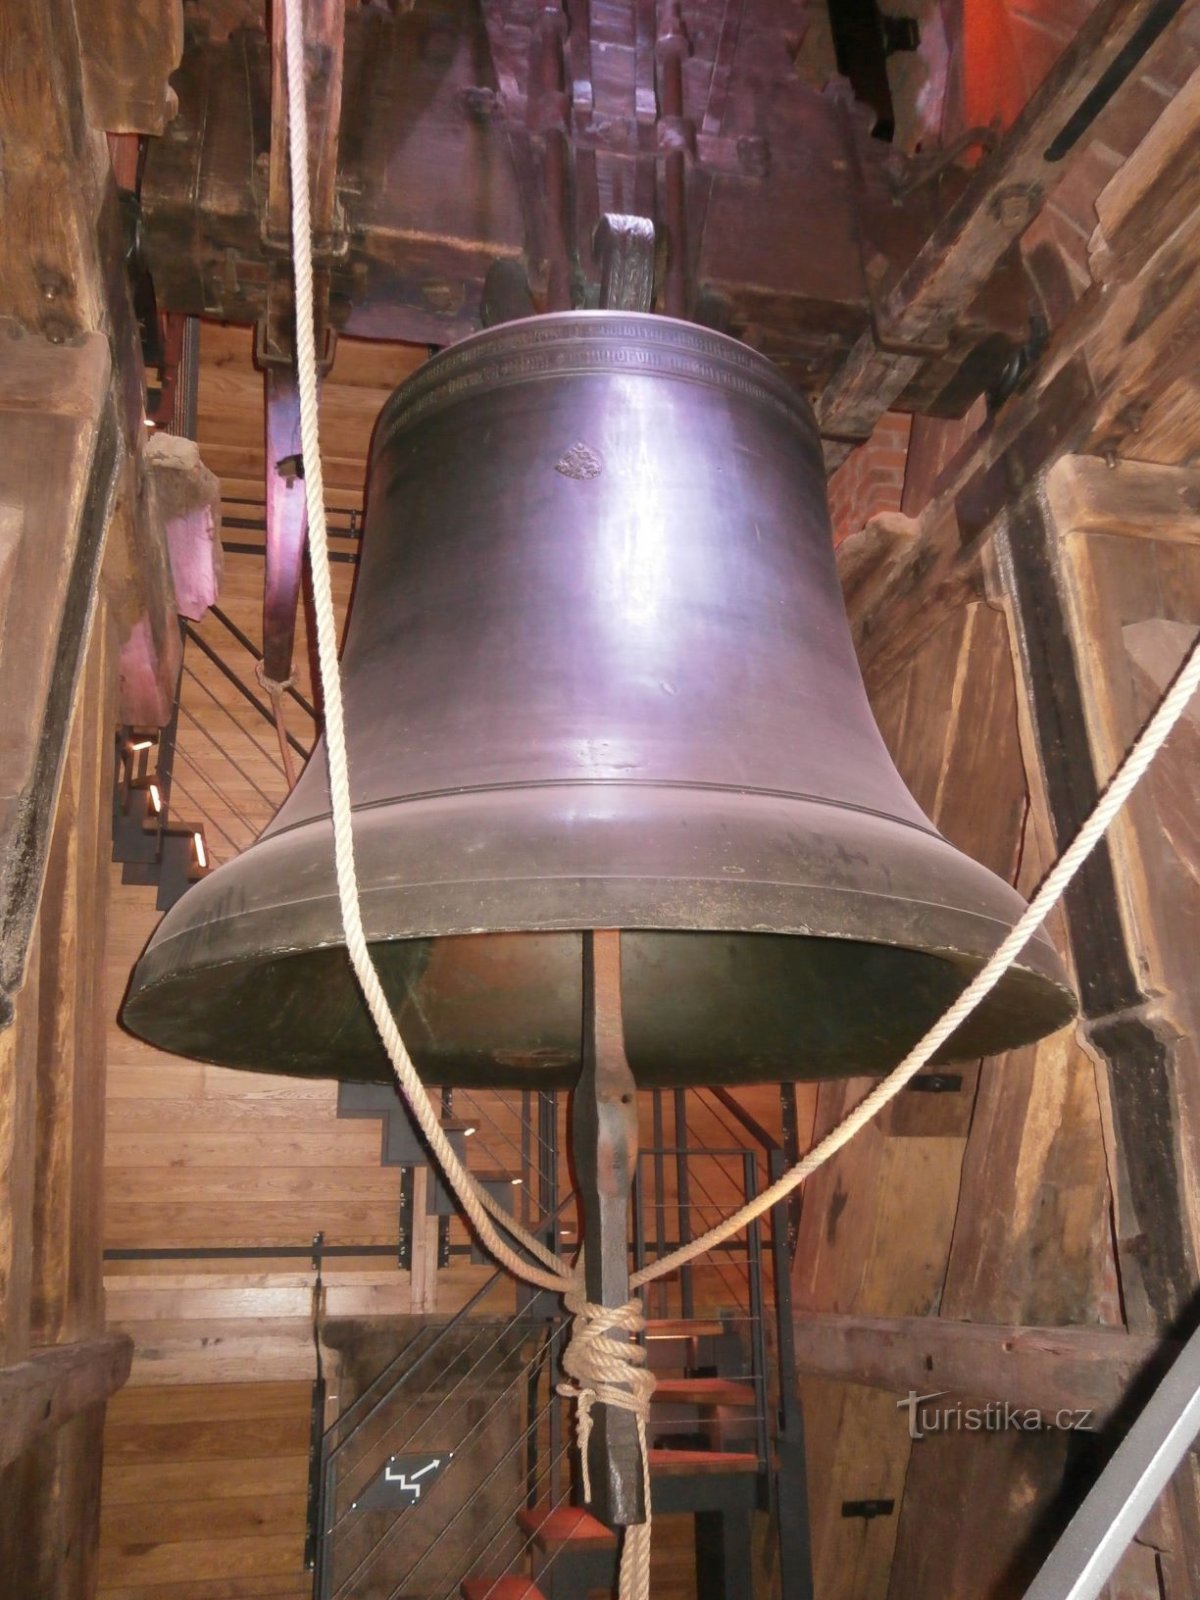 La campana de Agustín en la Torre Blanca (Hradec Králové, 11.9.2015/XNUMX/XNUMX)